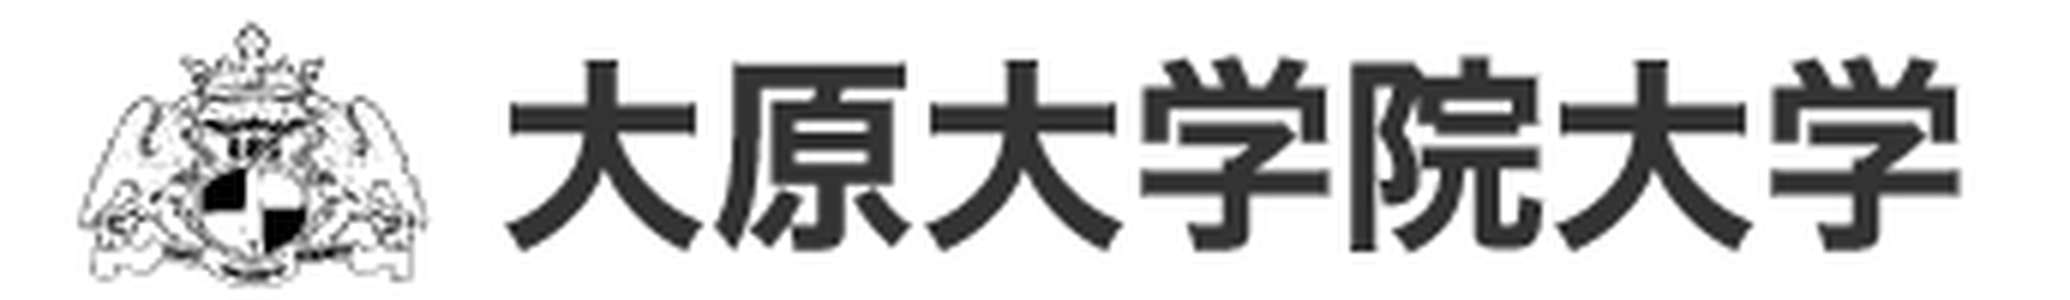 日本-大原会计学研究科-logo